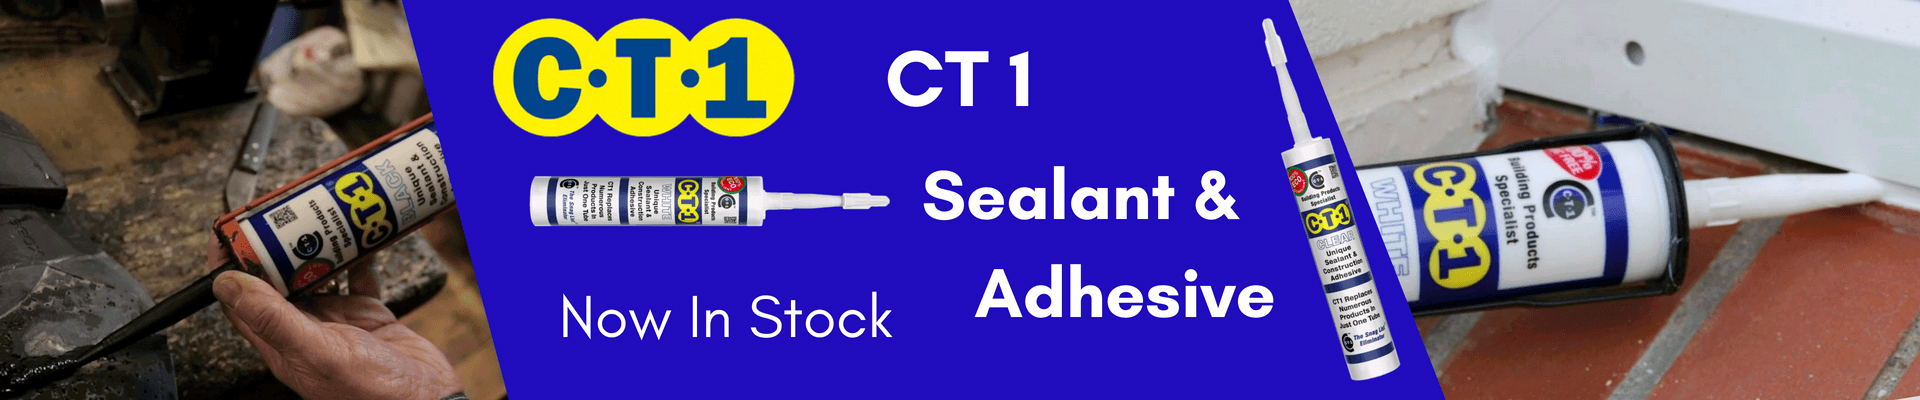 CT1 Sealant & Adhesive